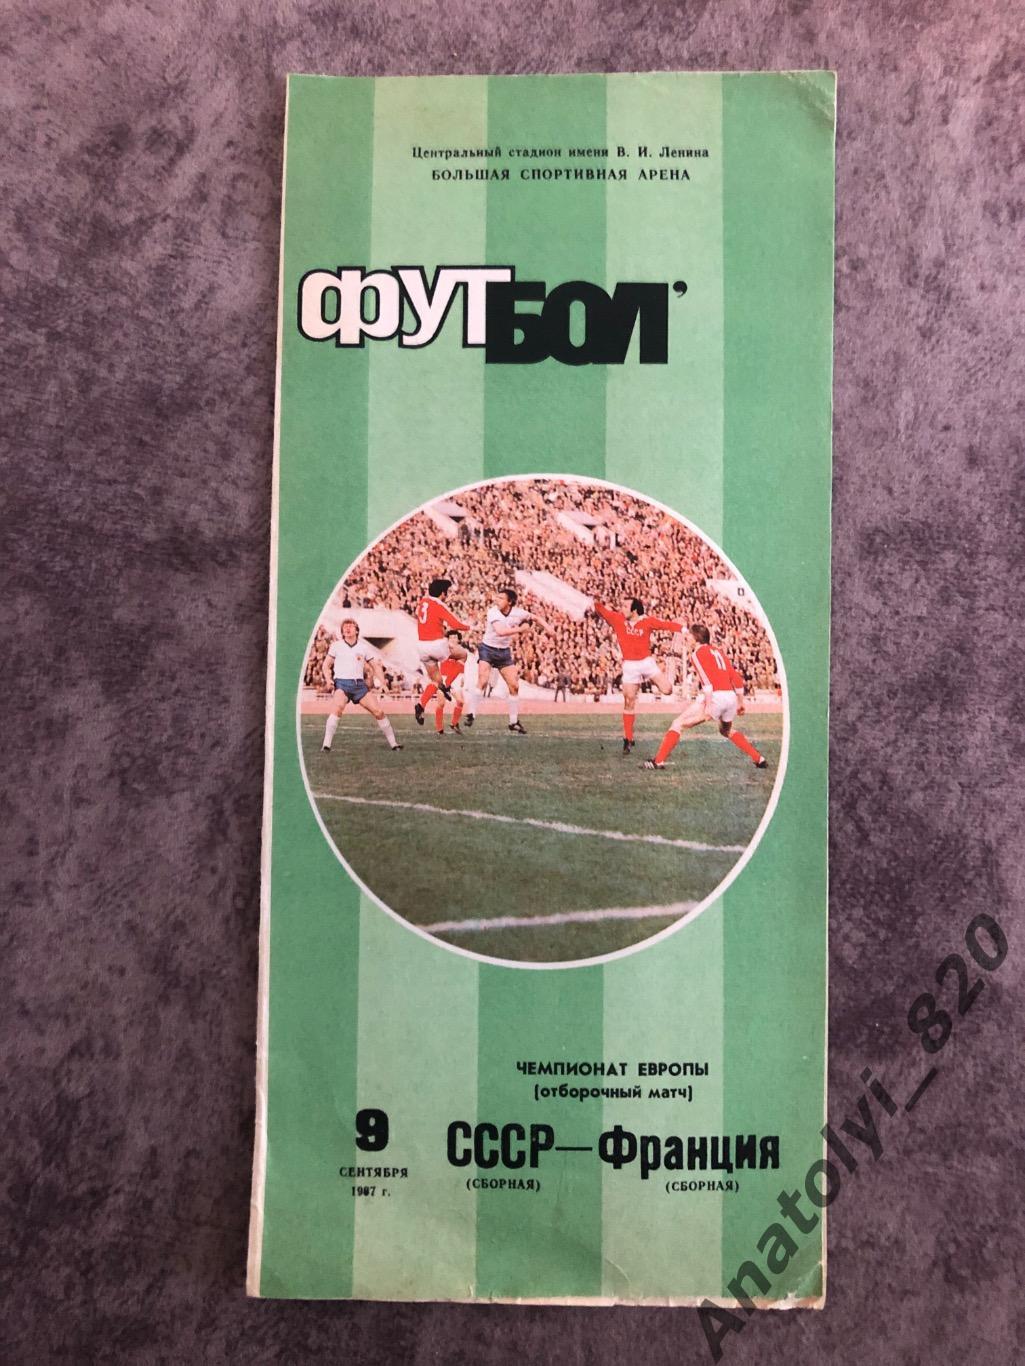 Сборная СССР - сборная Франции, 09.09.1987